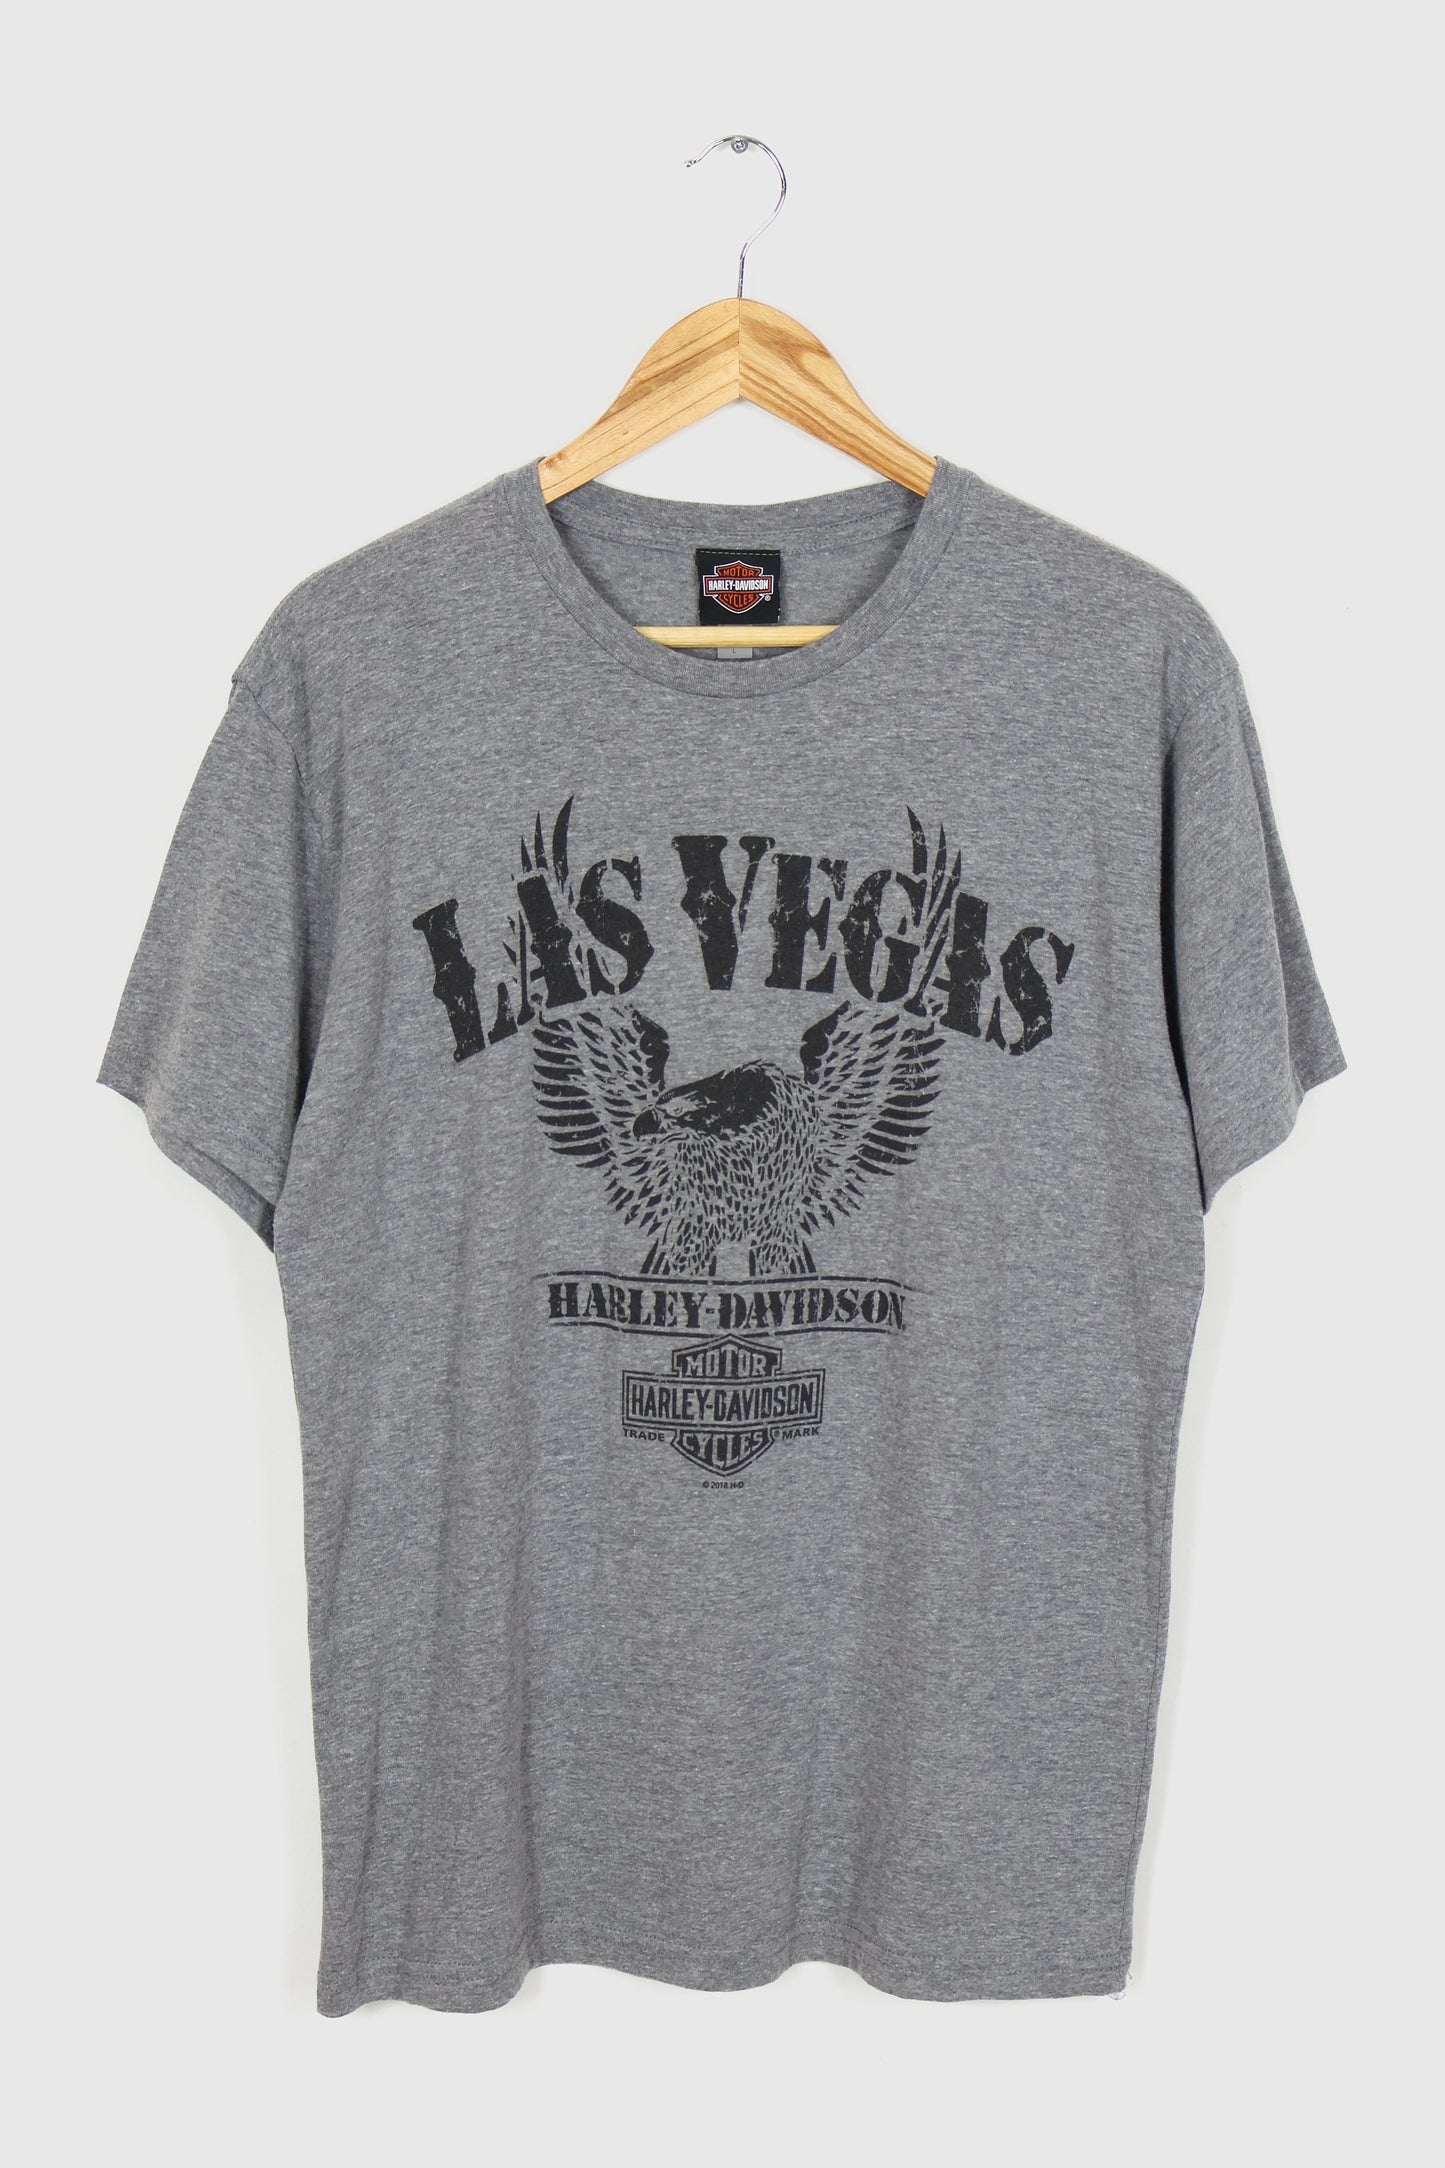 Harley Davidson Las Vegas Tee